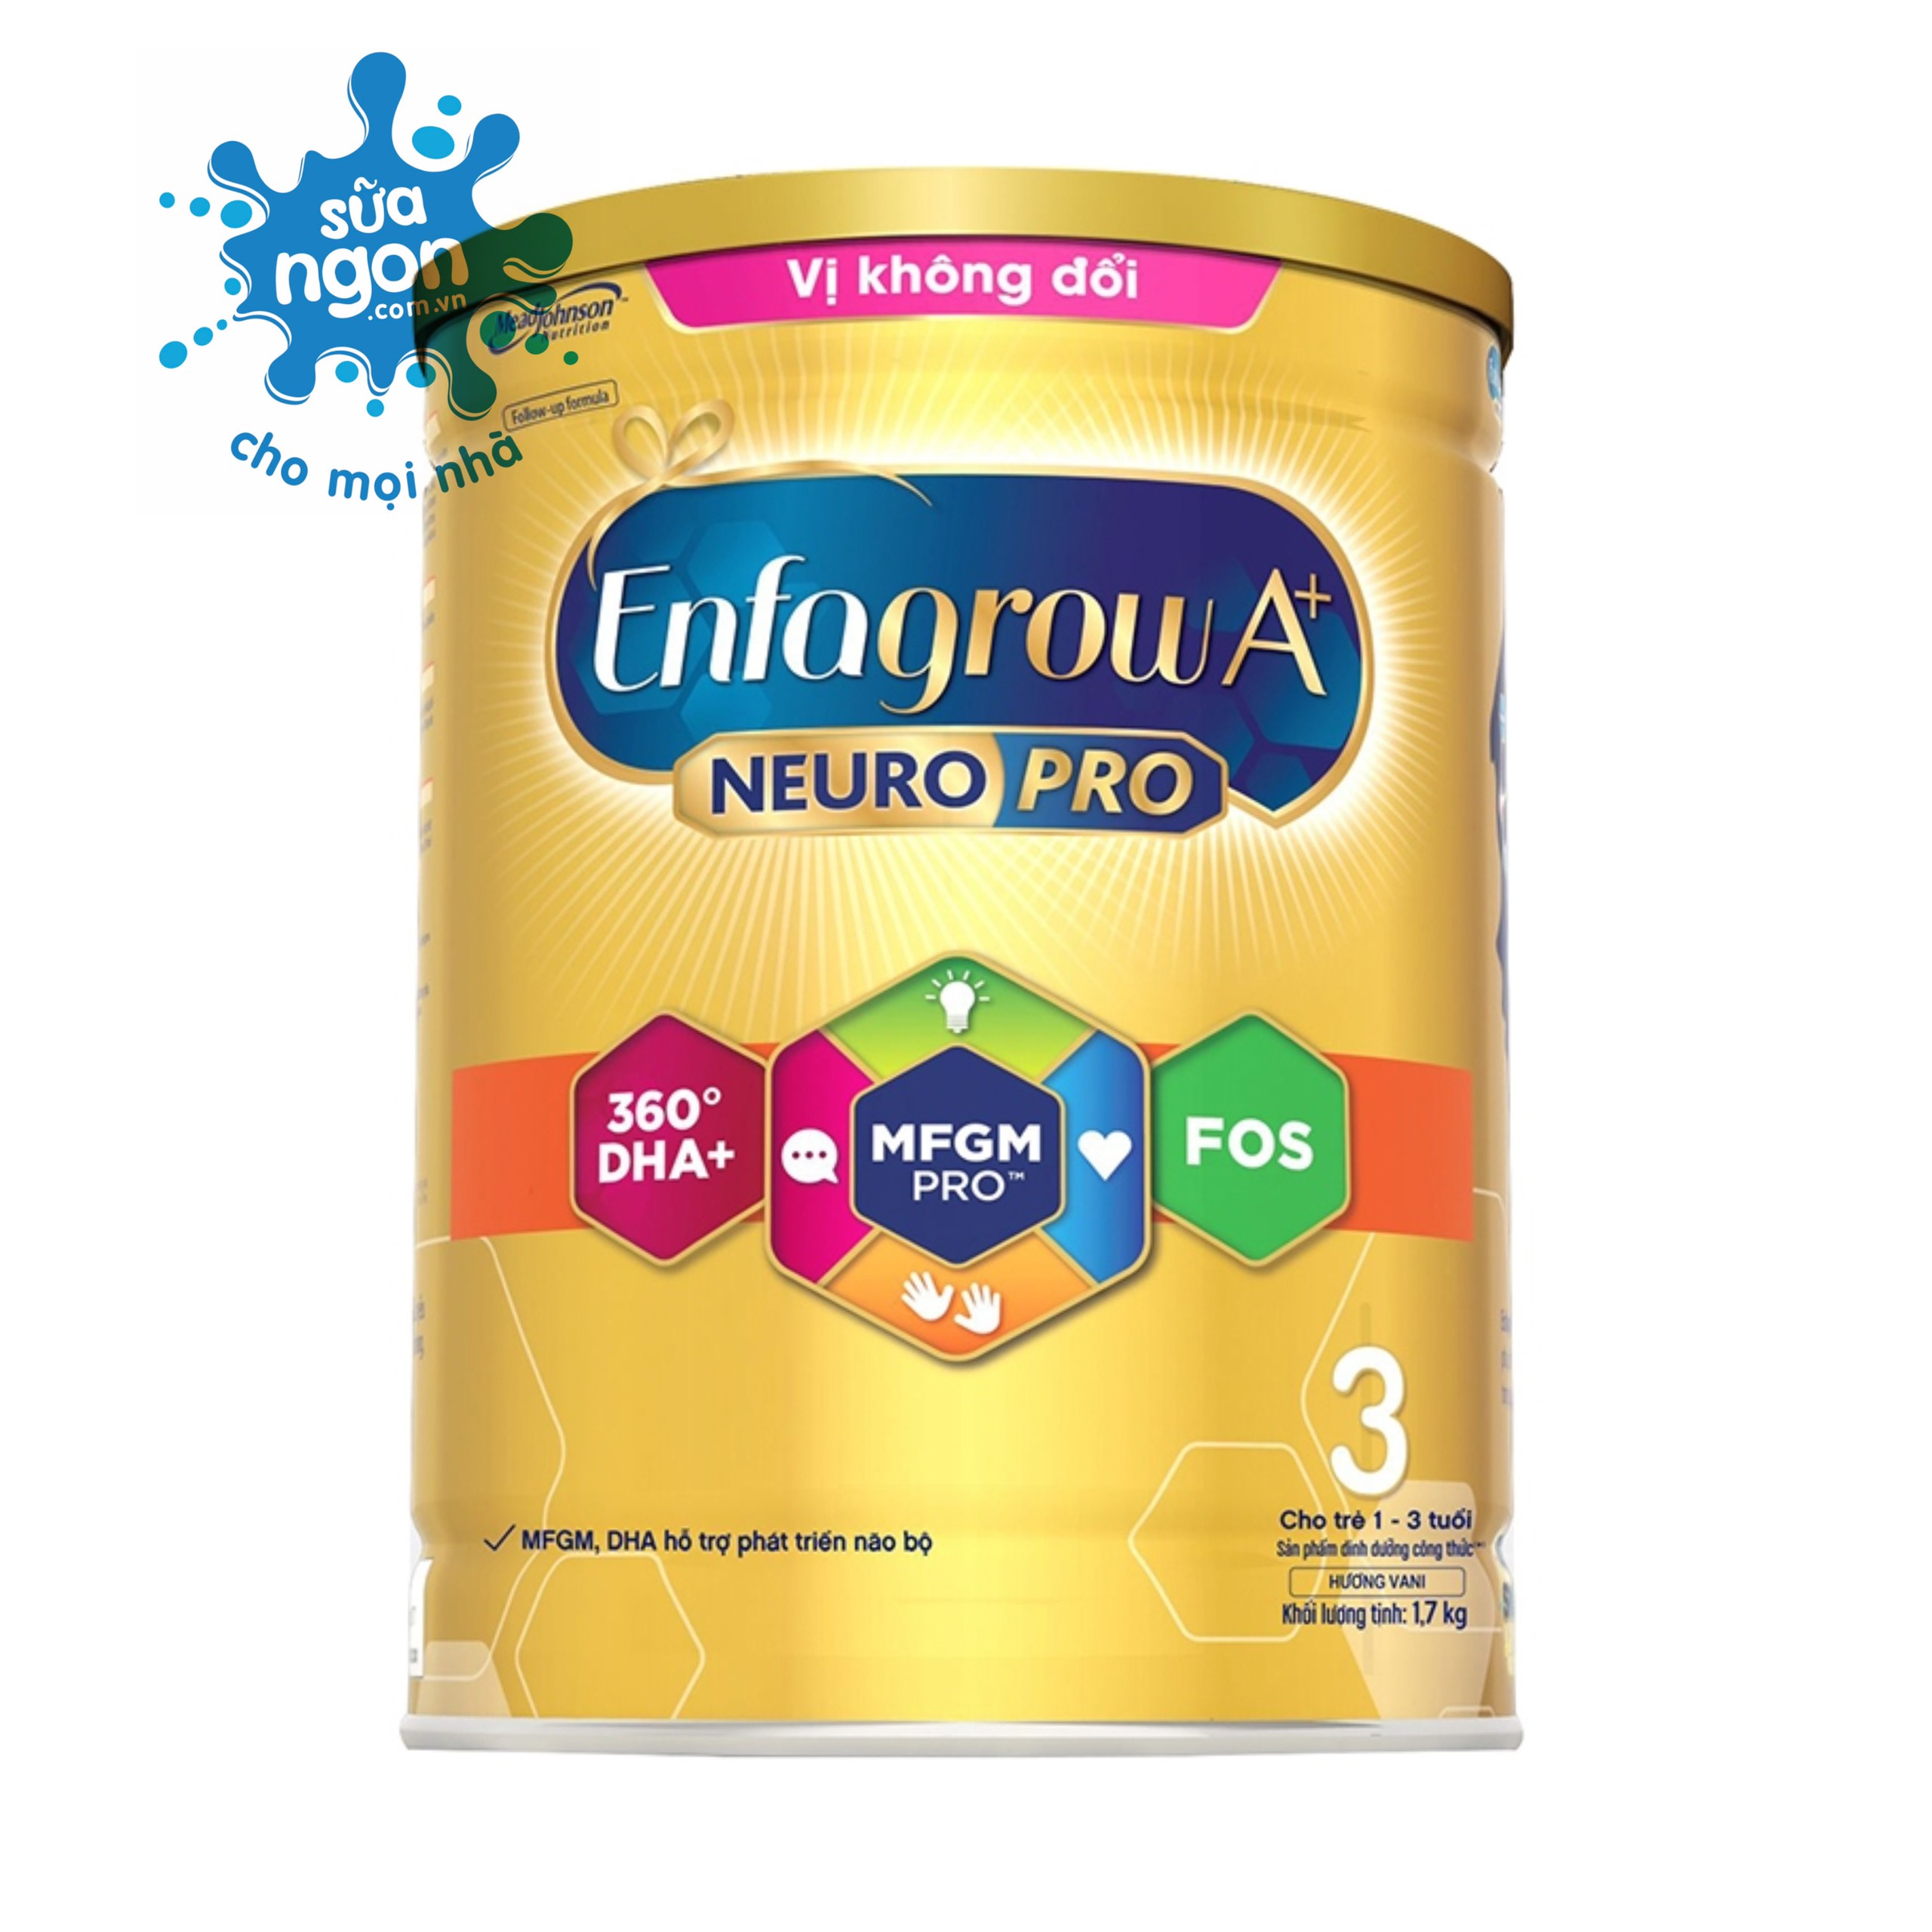 Sữa bột Enfagrow A+ NEUROPRO 3 Vị Không Đổi 1.7kg